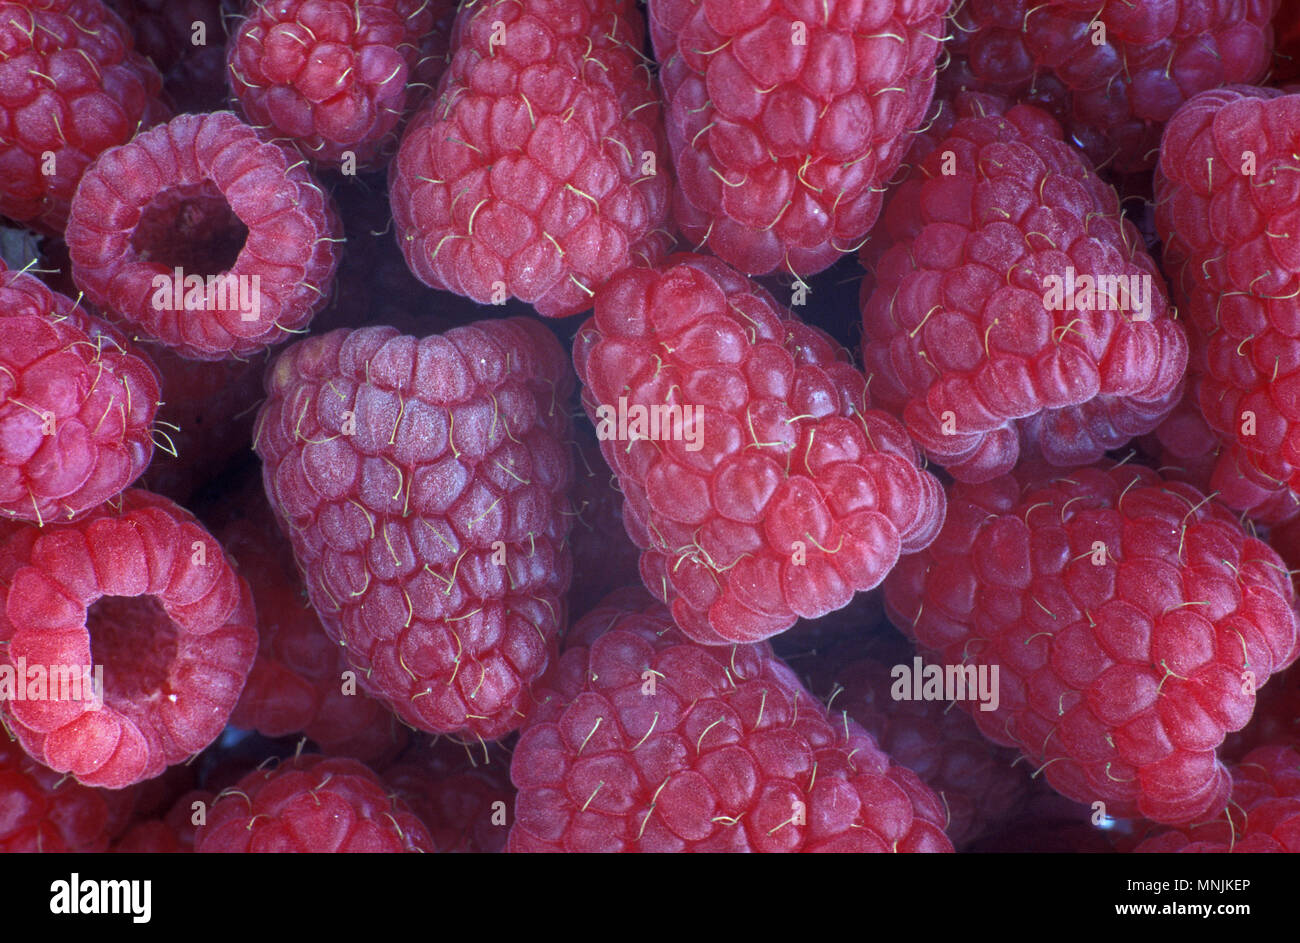 À fruits rouges fraîchement récolté framboises (Rubus) Banque D'Images